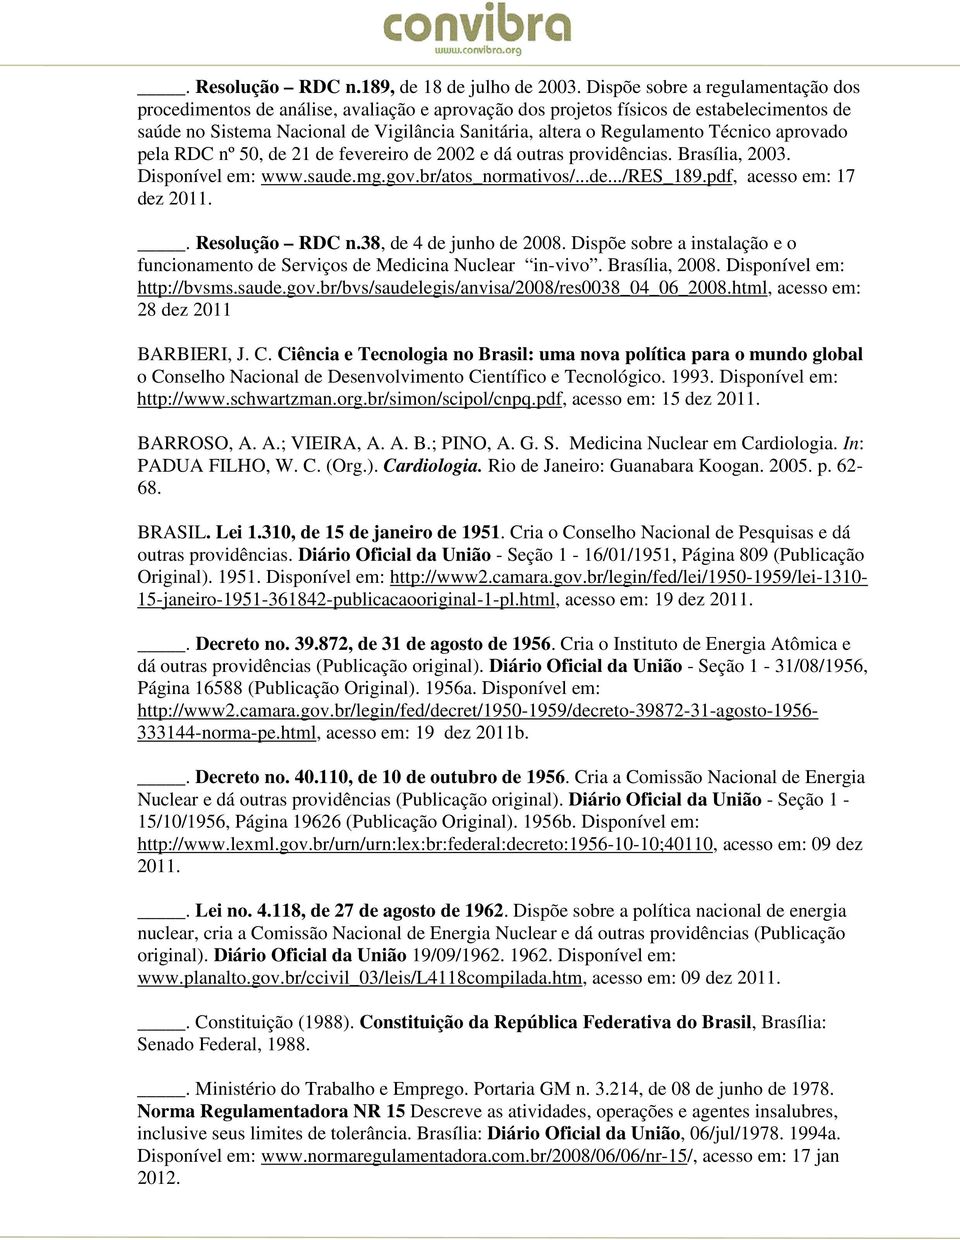 Técnico aprovado pela RDC nº 50, de 21 de fevereiro de 2002 e dá outras providências. Brasília, 2003. Disponível em: www.saude.mg.gov.br/atos_normativos/...de.../res_189.pdf, acesso em: 17 dez 2011.